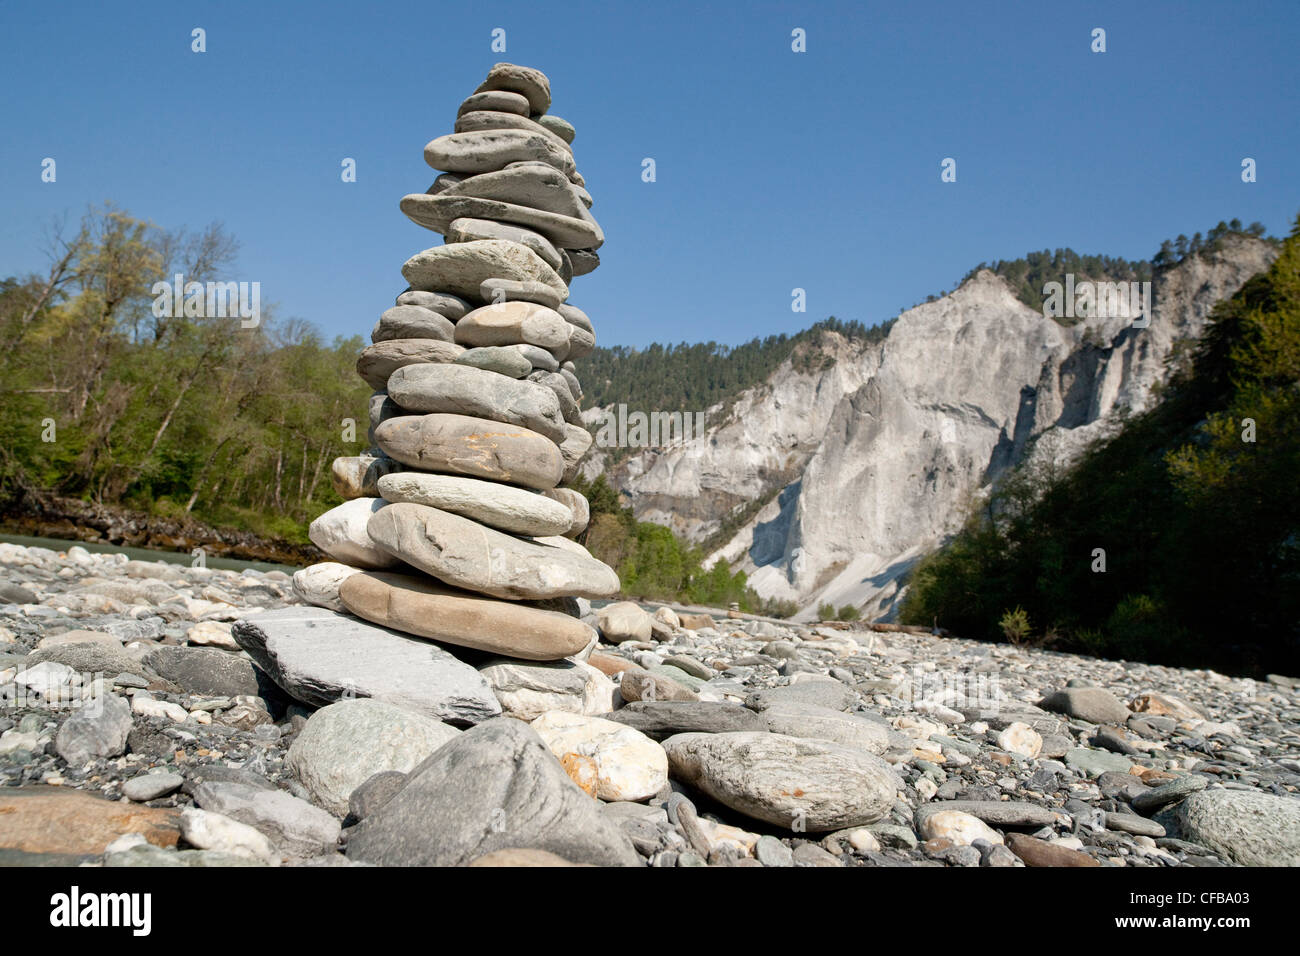 River, Flow, brook, water, gulch, canton, Graubünden, Grisons, Switzerland, Europe, Rhine, brook bed, stones, stone tower, Versa Stock Photo